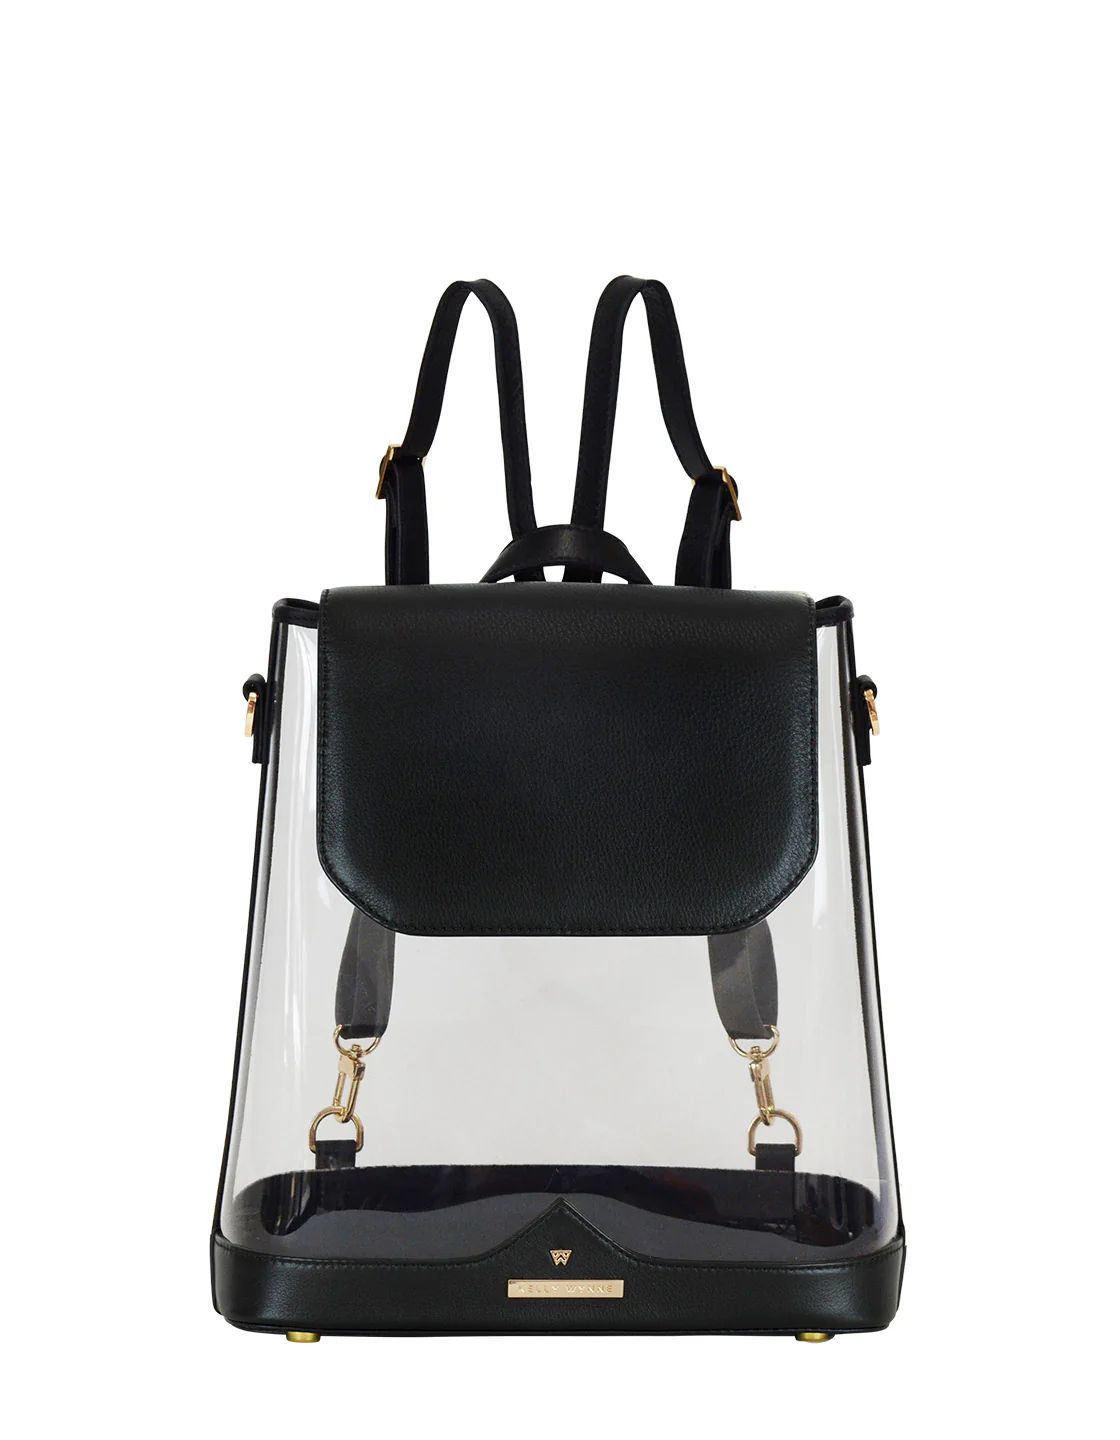 Clear BYOBackpack in Black | Kelly Wynne | Kelly Wynne Handbags